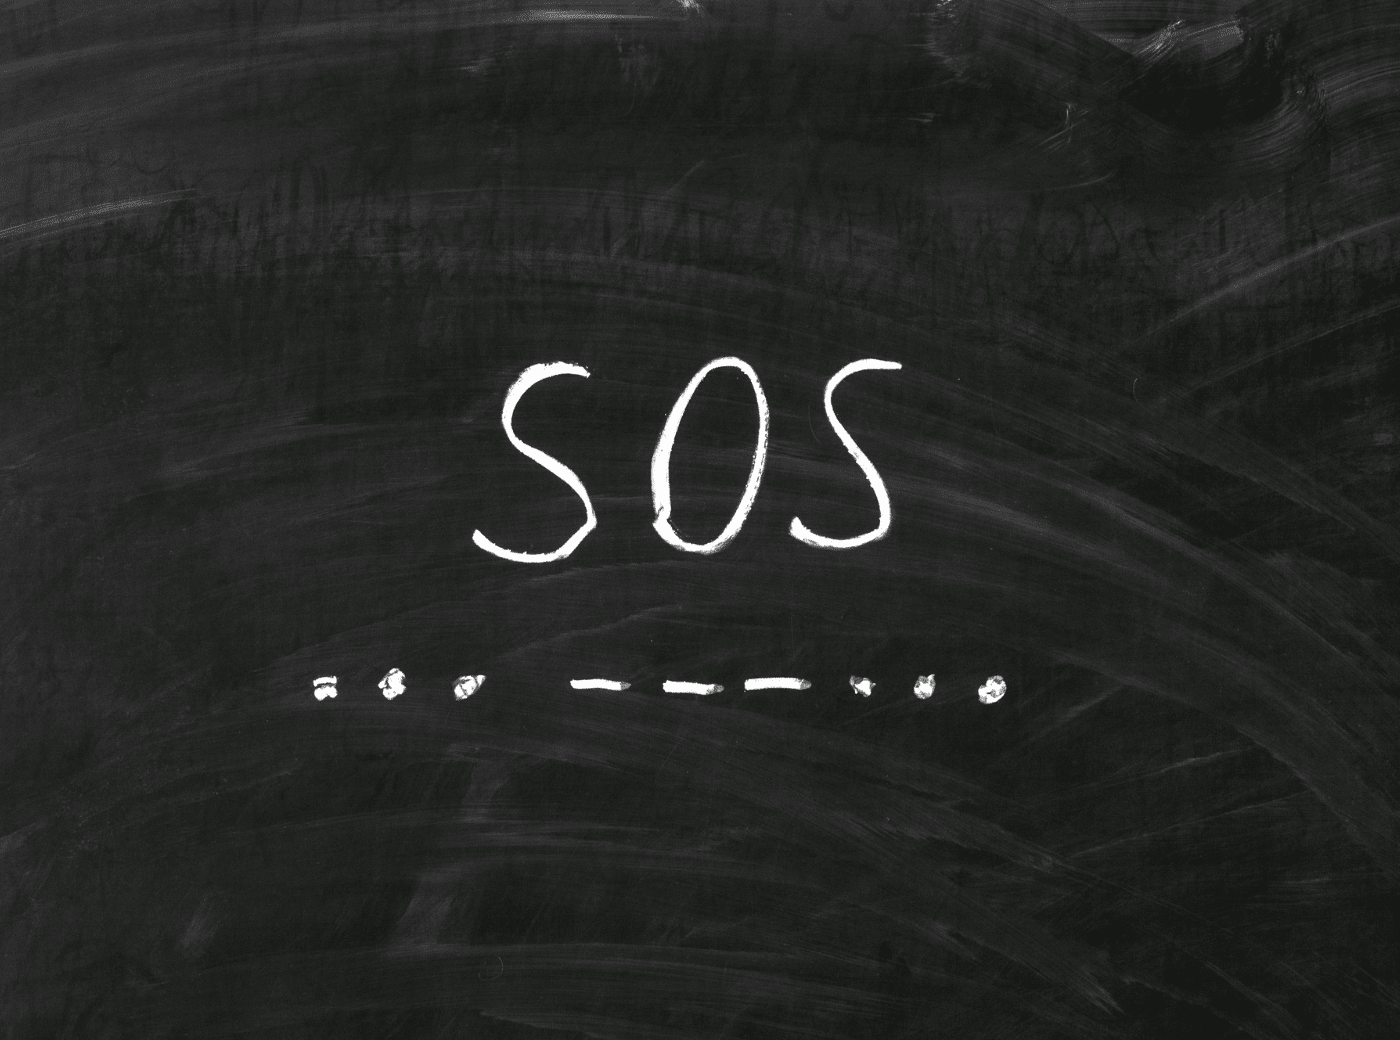 SOS Signal als Morsecode